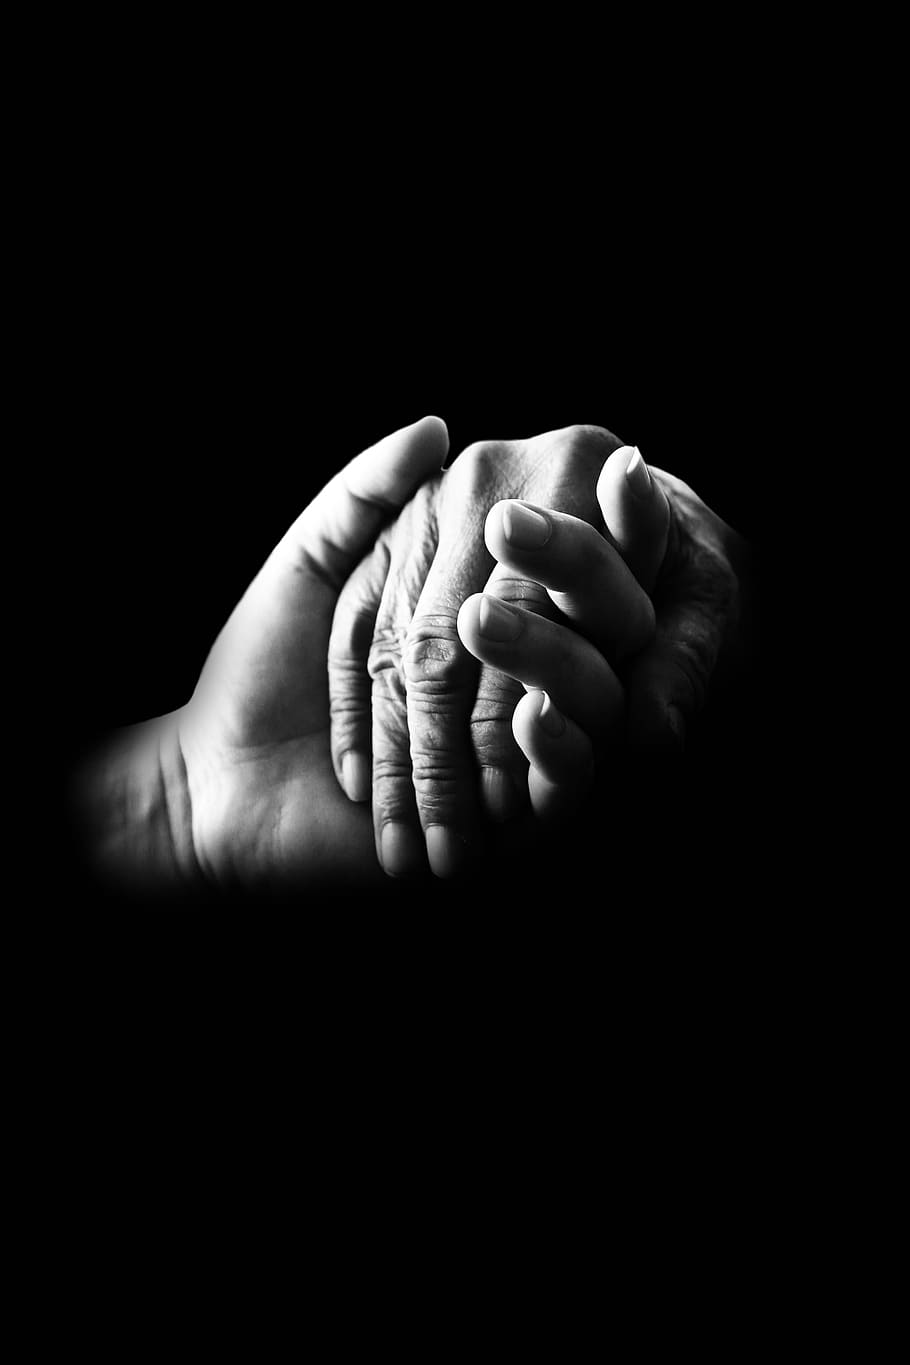 фото в оттенках серого, двое, руки, держа, сострадание, помощь, старый, забота, поддержка, сочувствие